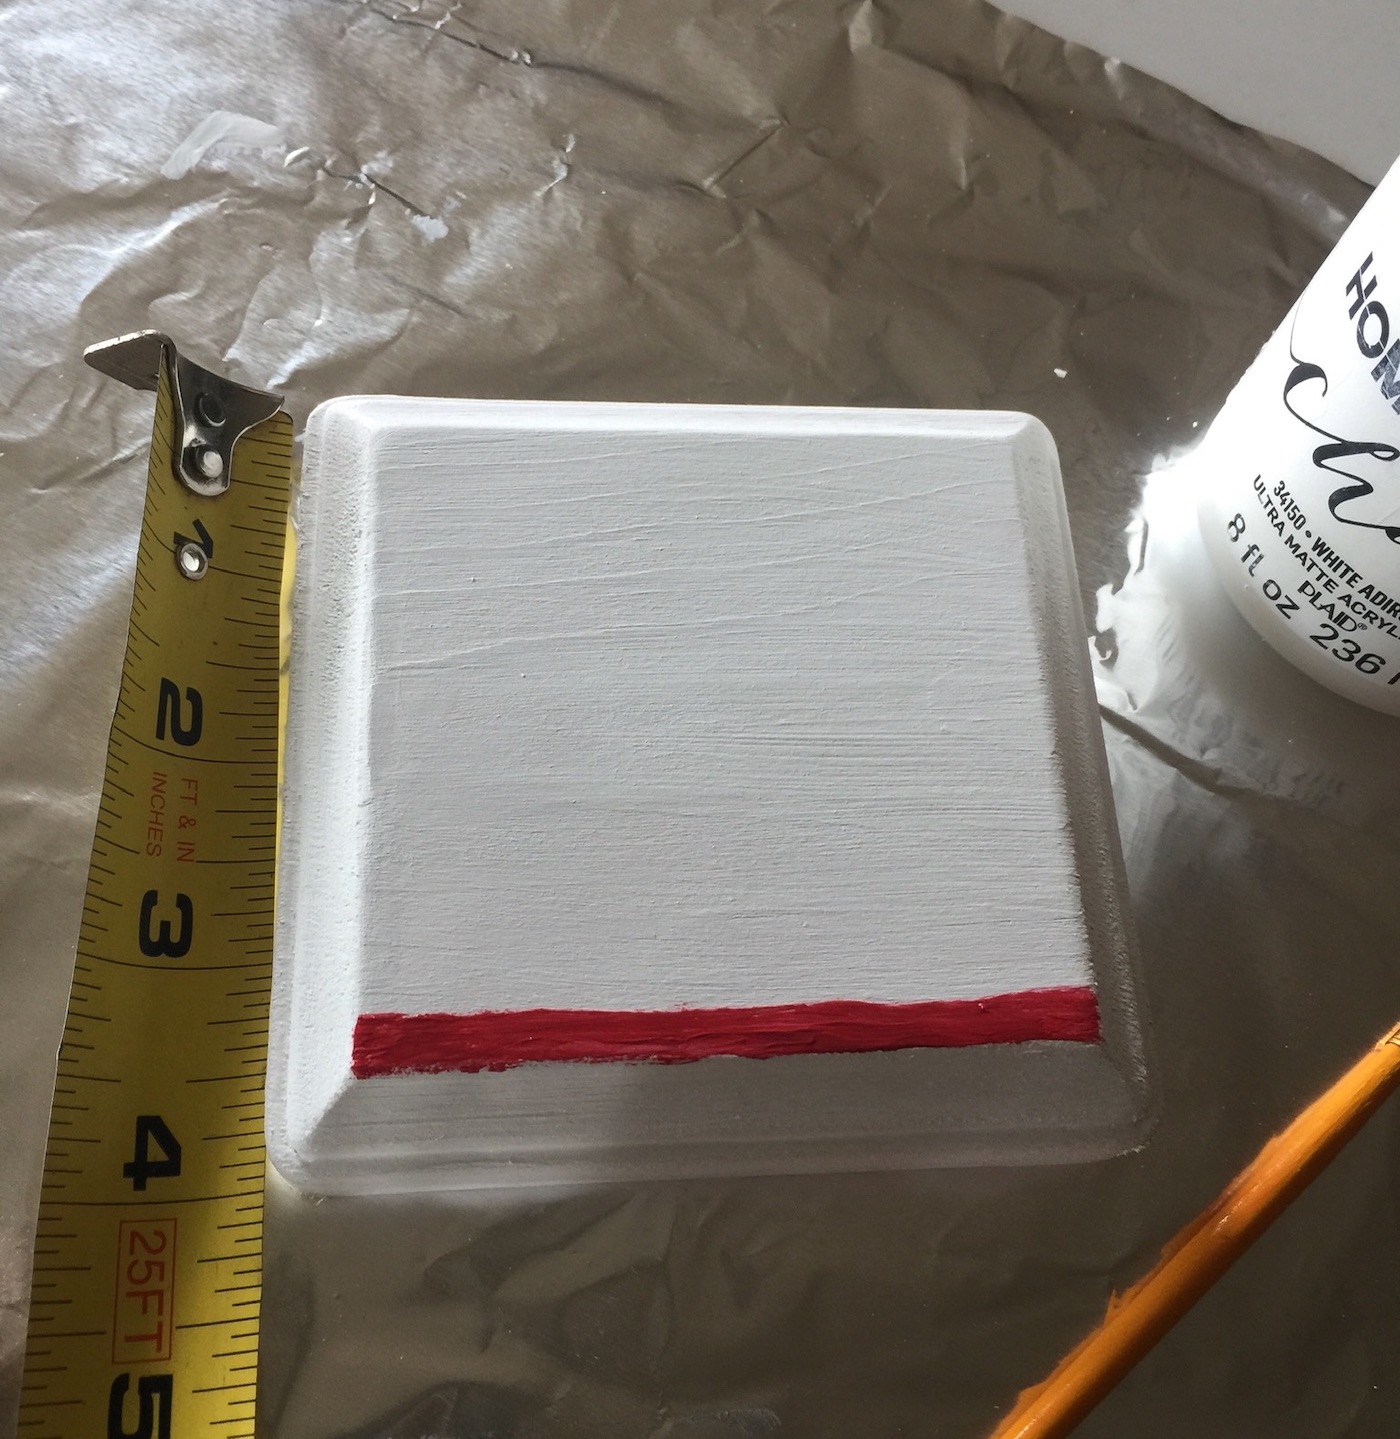 Dedo de linha vermelha pintado na placa branca